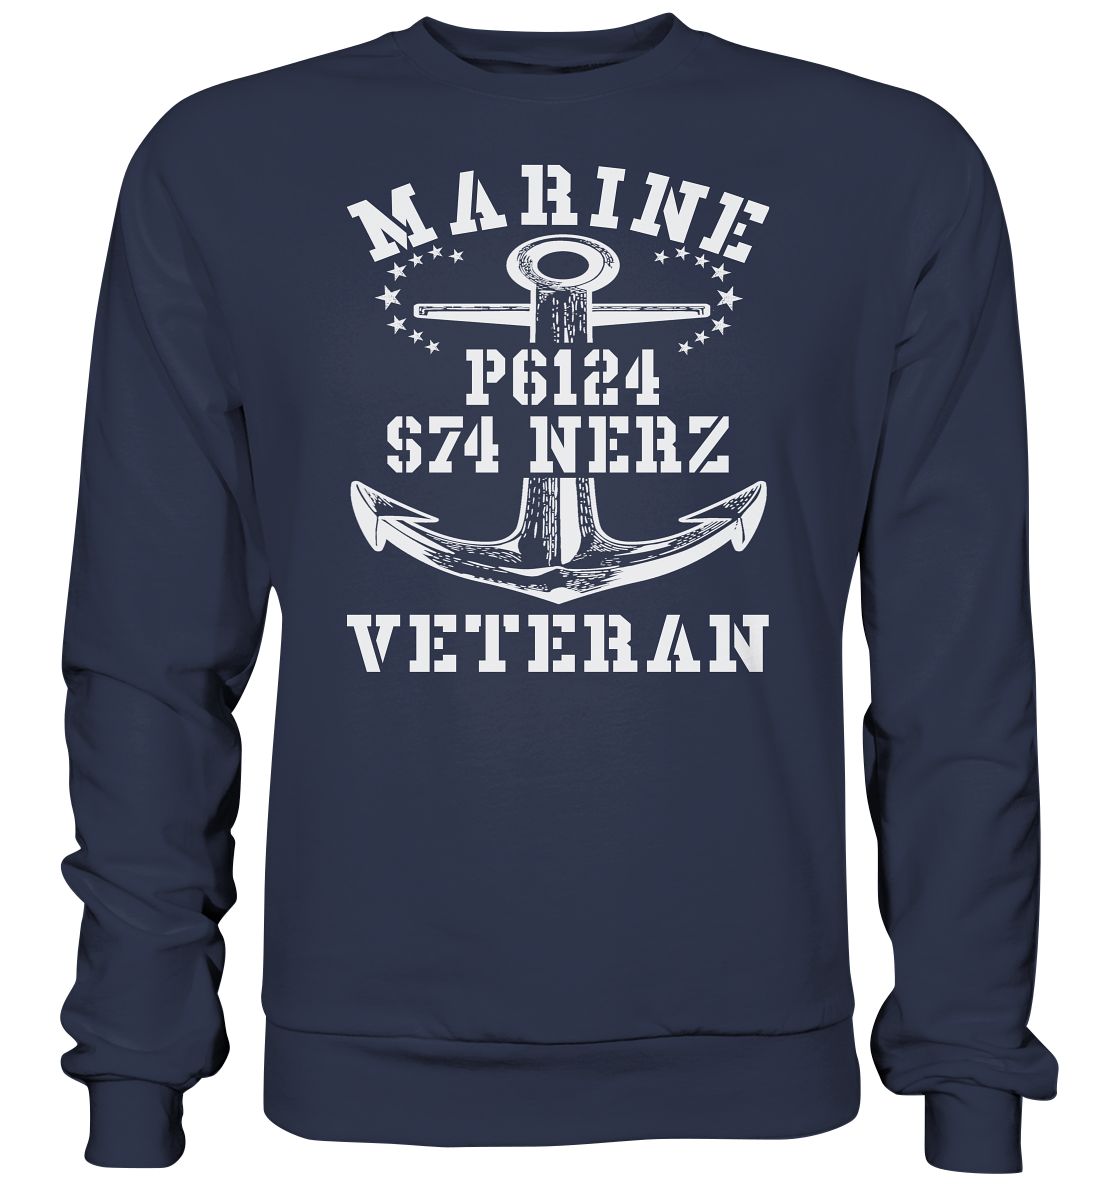 FK-Schnellboot P6124 NERZ Marine Veteran - Premium Sweatshirt